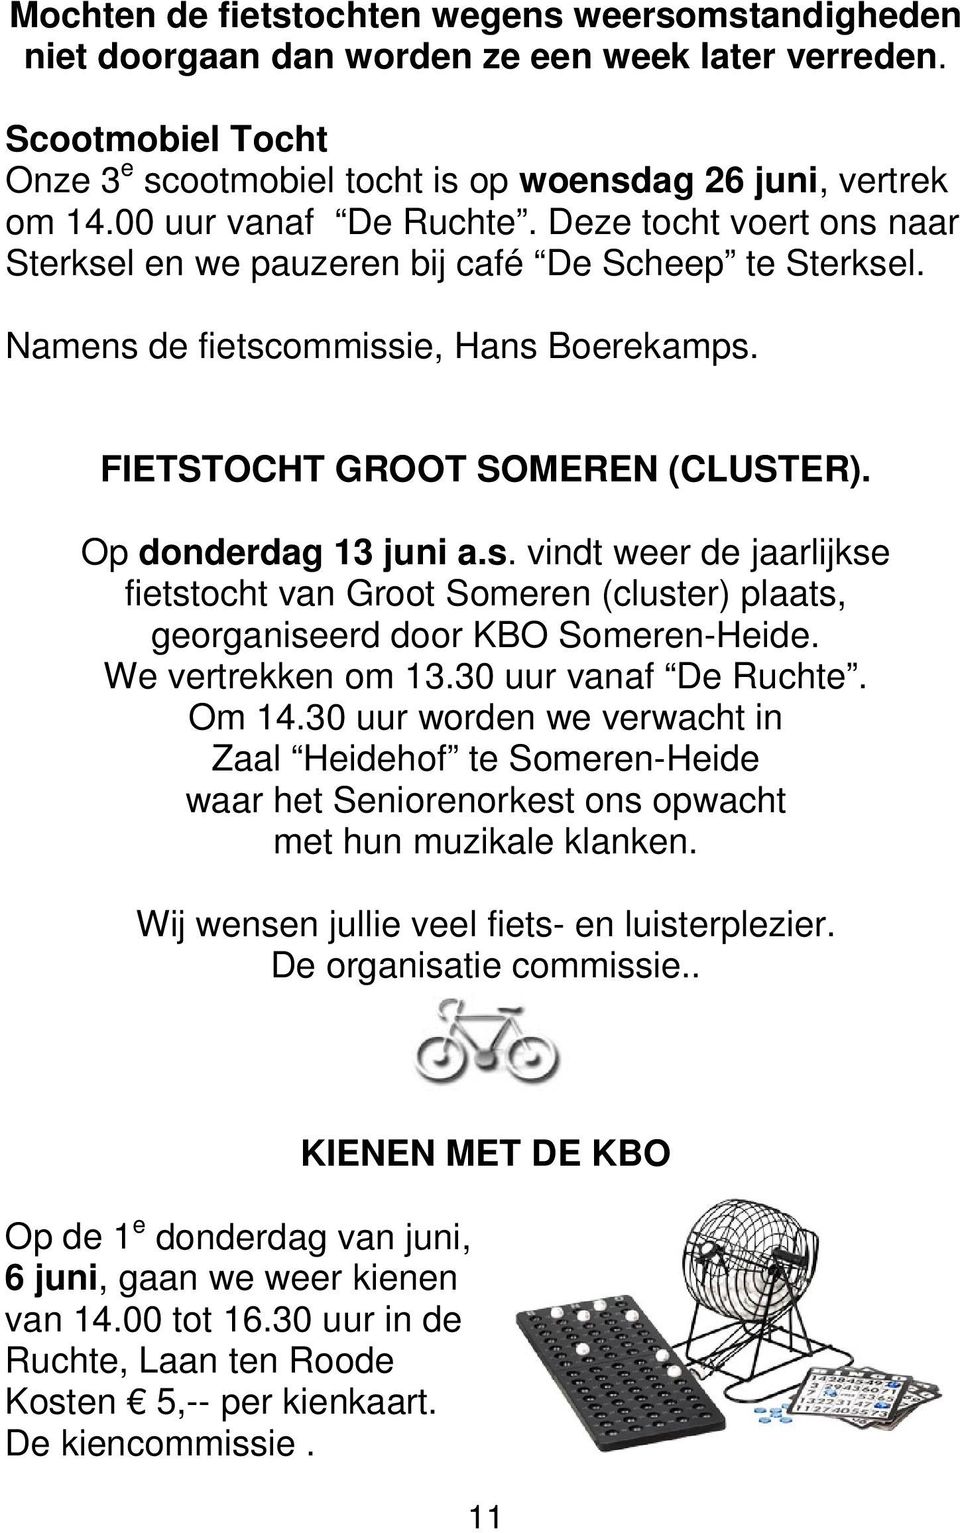 Op donderdag 13 juni a.s. vindt weer de jaarlijkse fietstocht van Groot Someren (cluster) plaats, georganiseerd door KBO Someren-Heide. We vertrekken om 13.30 uur vanaf De Ruchte. Om 14.